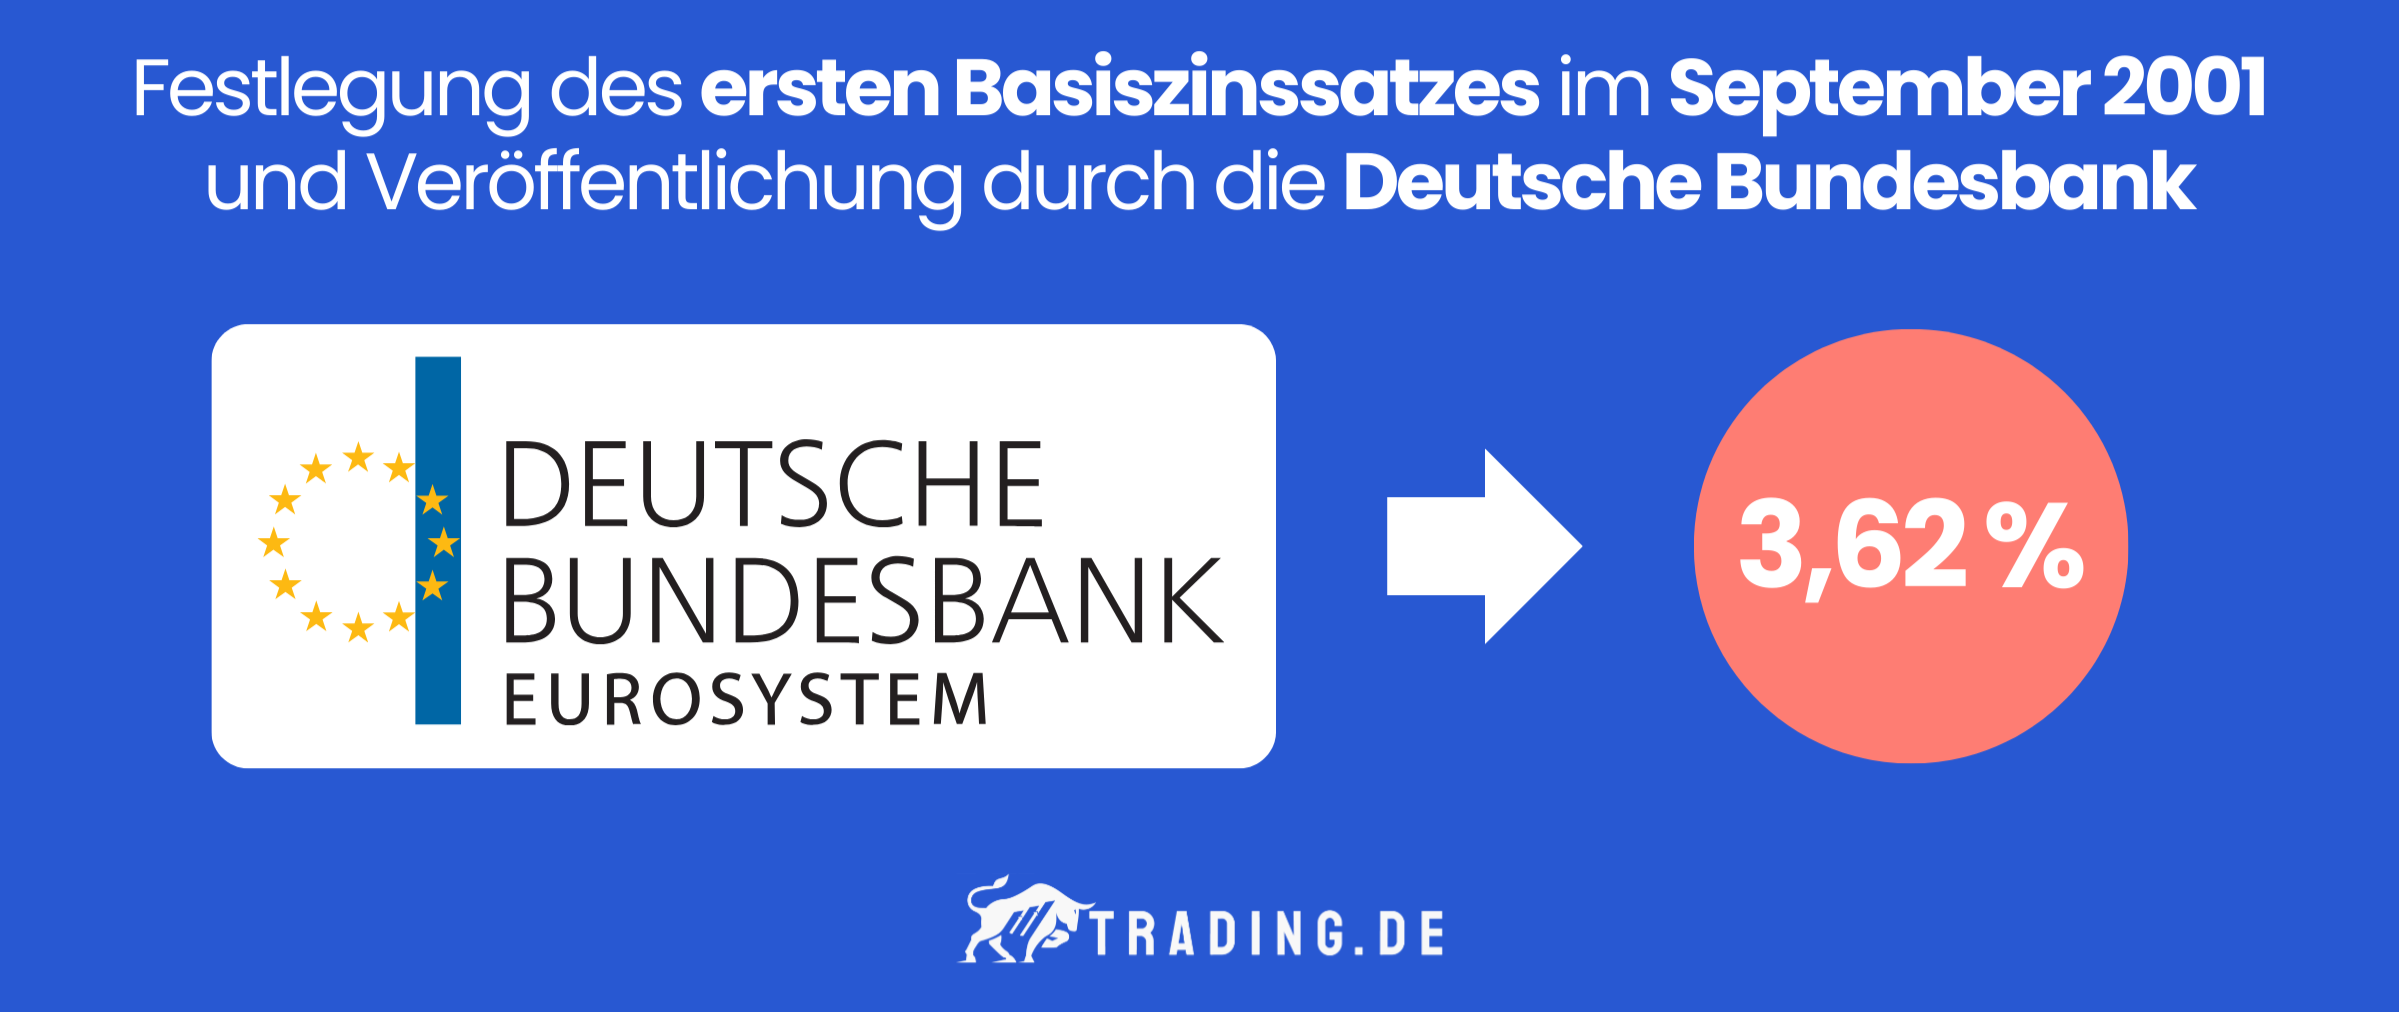 Festlegung des ersten Basiszinssatzes (3,62 Prozent) im September 2001 und Veröffentlichung durch die Deutsche Bundesbank